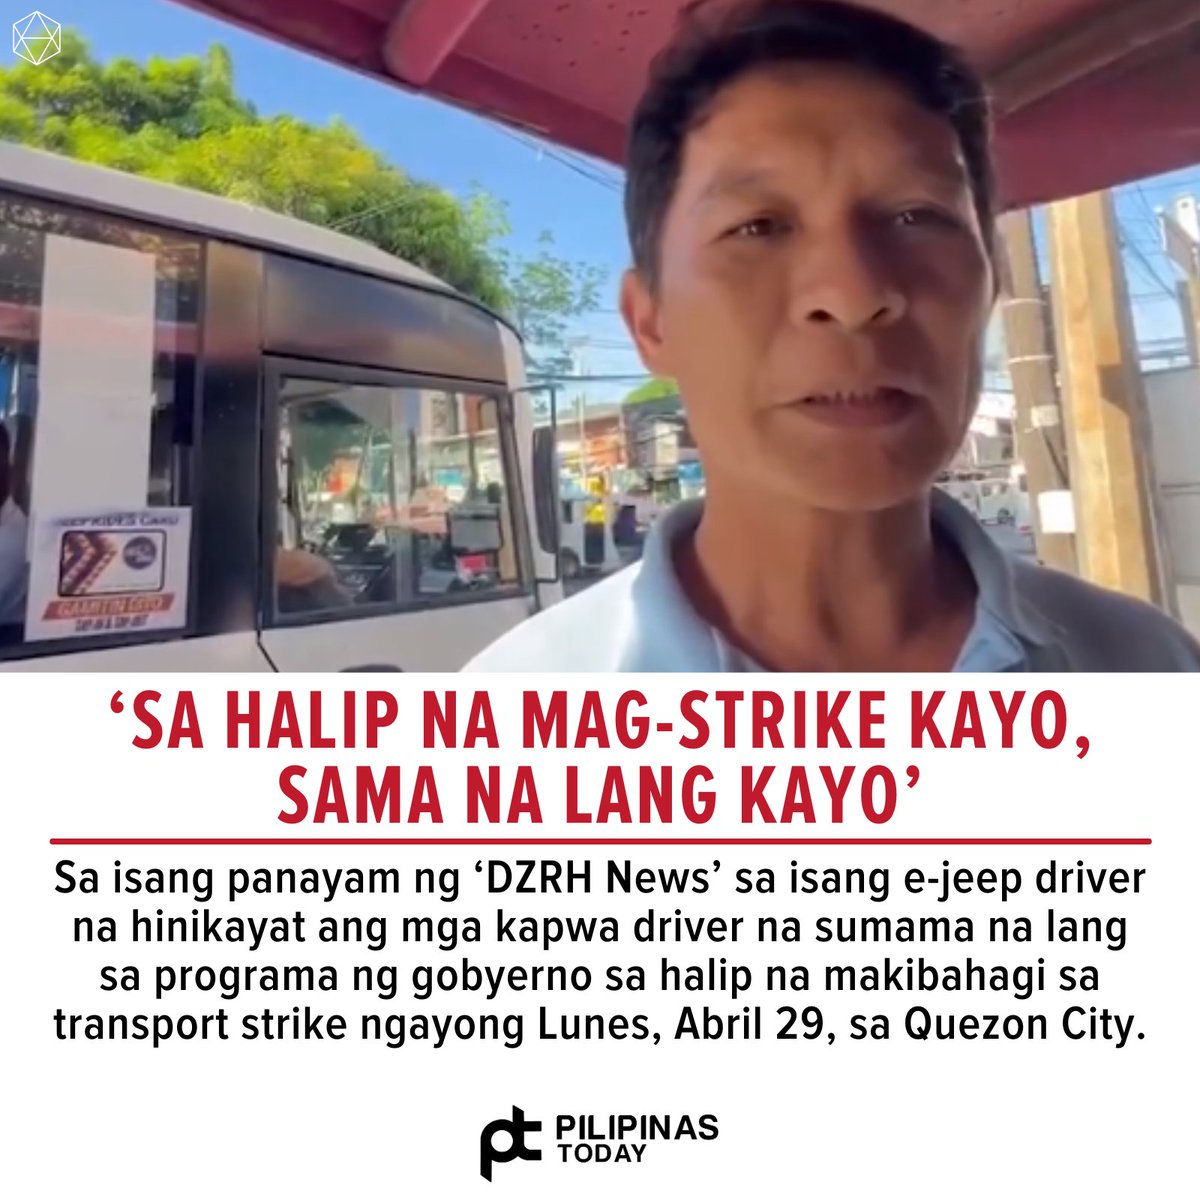 Ito ang naging pahayag ng isang e-jeep driver sa mga nagpoprotesta ngayong Lunes, April 29, laban sa franchise consolidation sa ilalim ng PUV Modernization Program.

(Screen grab of DZRH News/ Facebook page)

#PilipinasToday
#QuezonCity
#TransportStrike